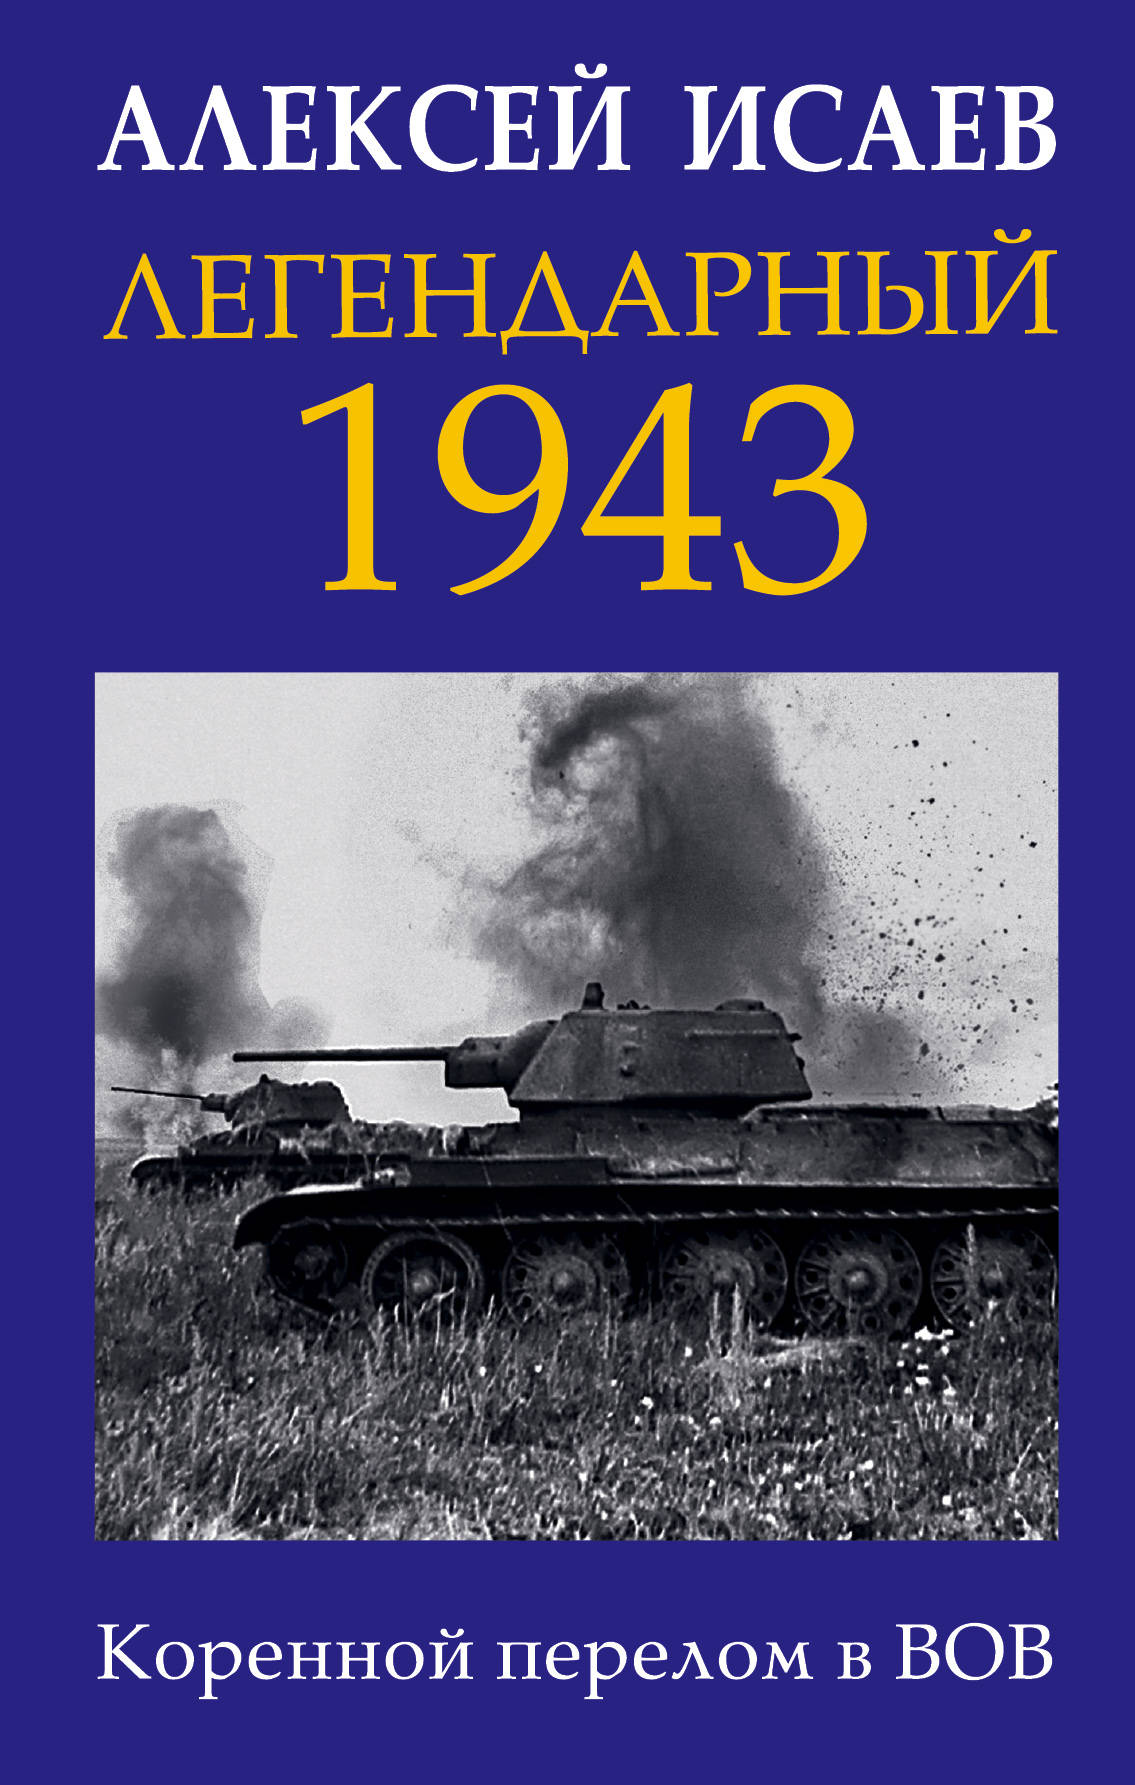  1943.    